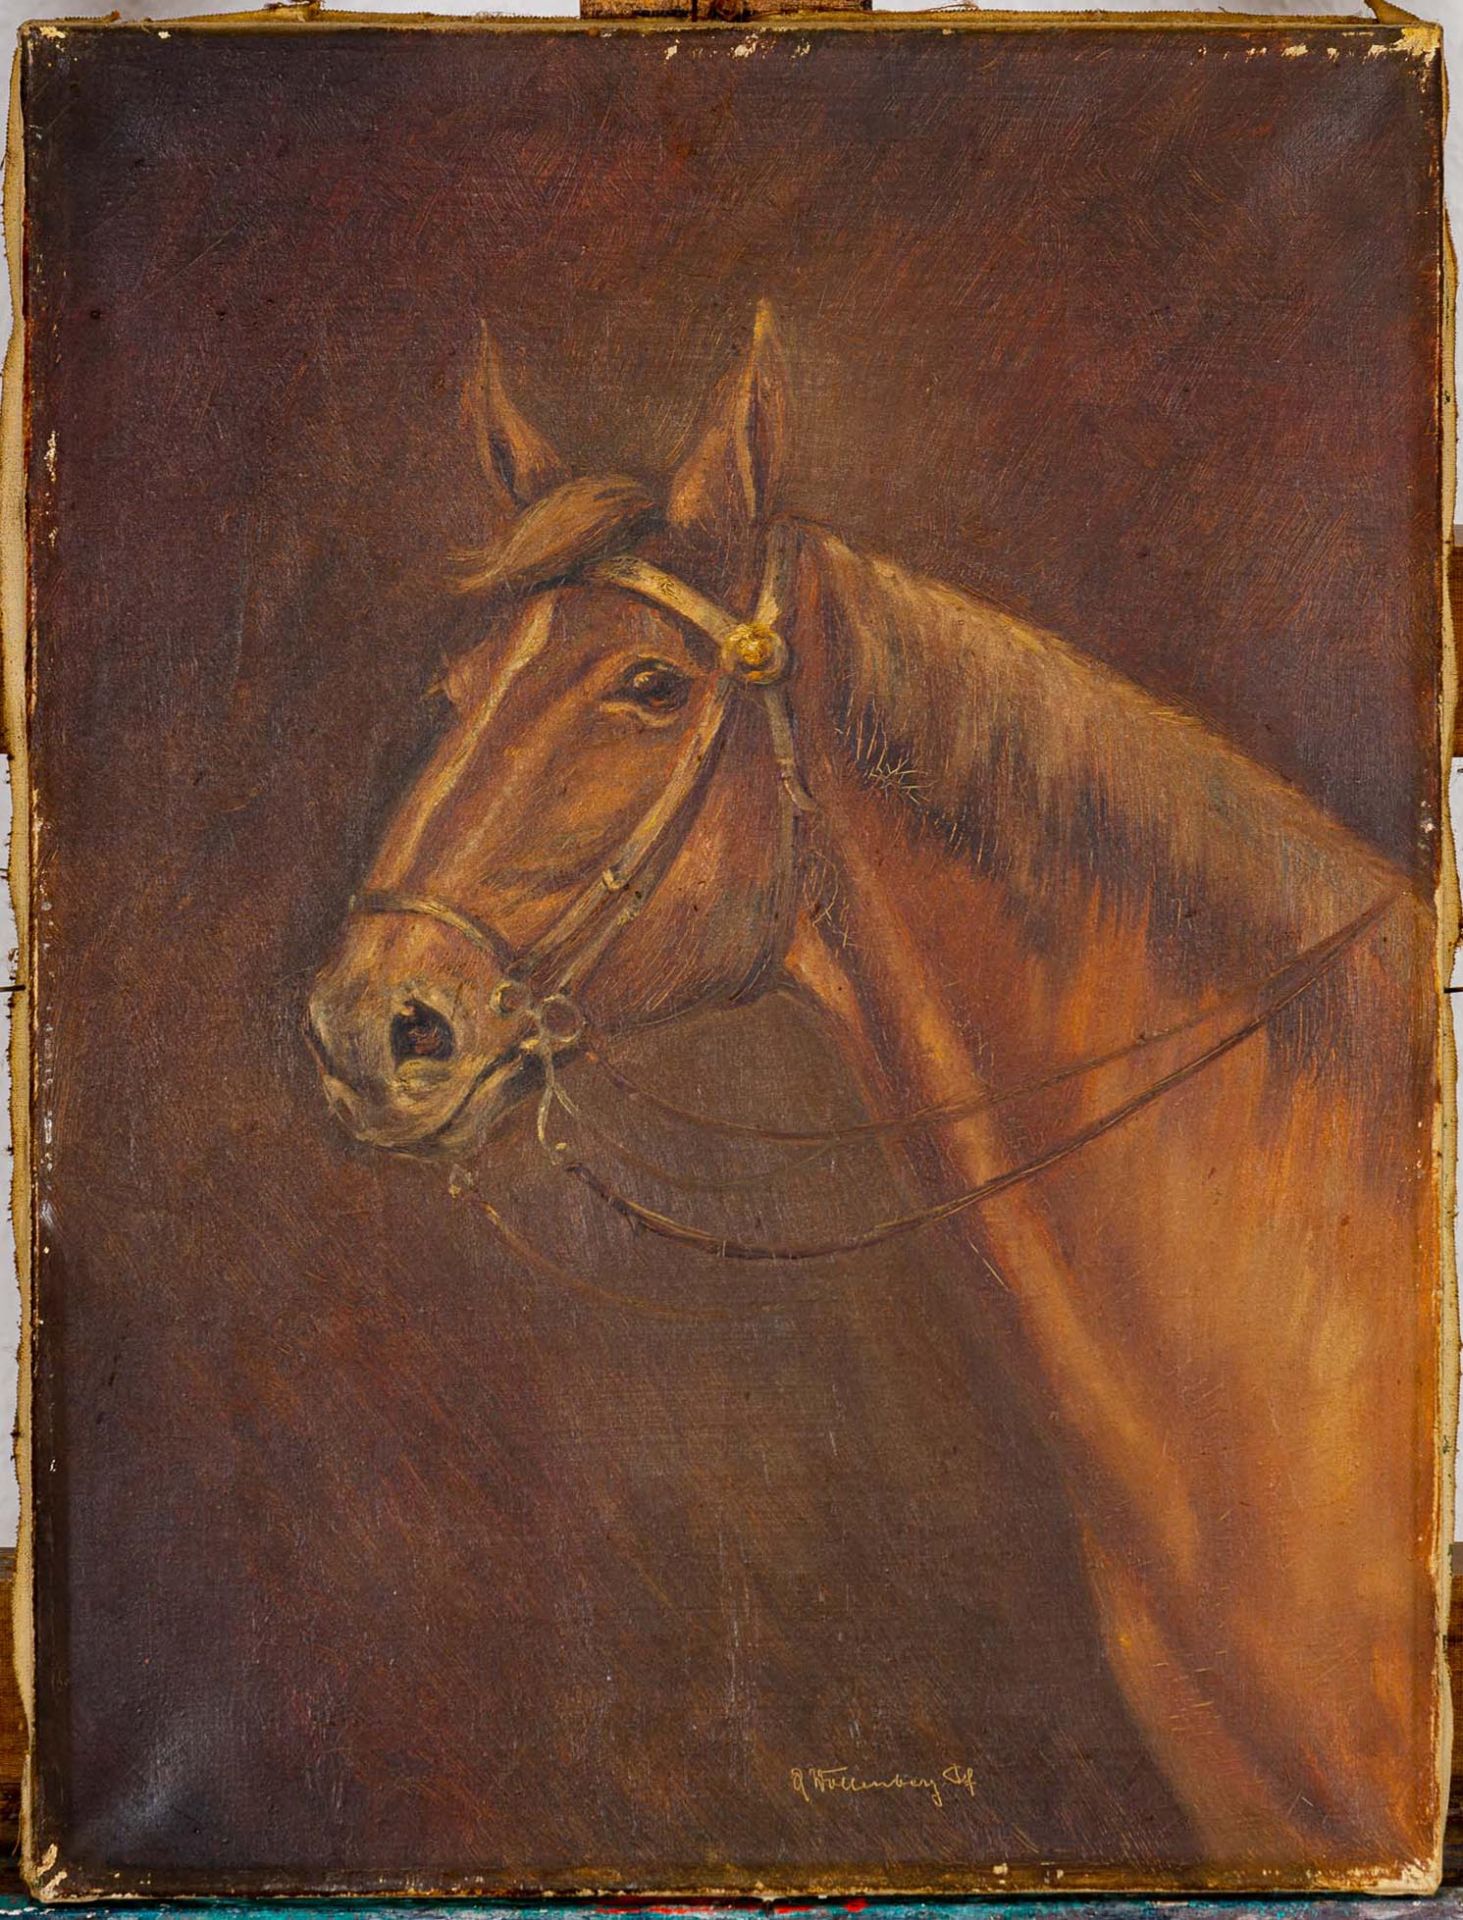 Pferdeportrait, Gemälde, Öl auf Leinwand, ca. 40 x 30 cm, unten rechts signiert: A. Wollenberg d. F